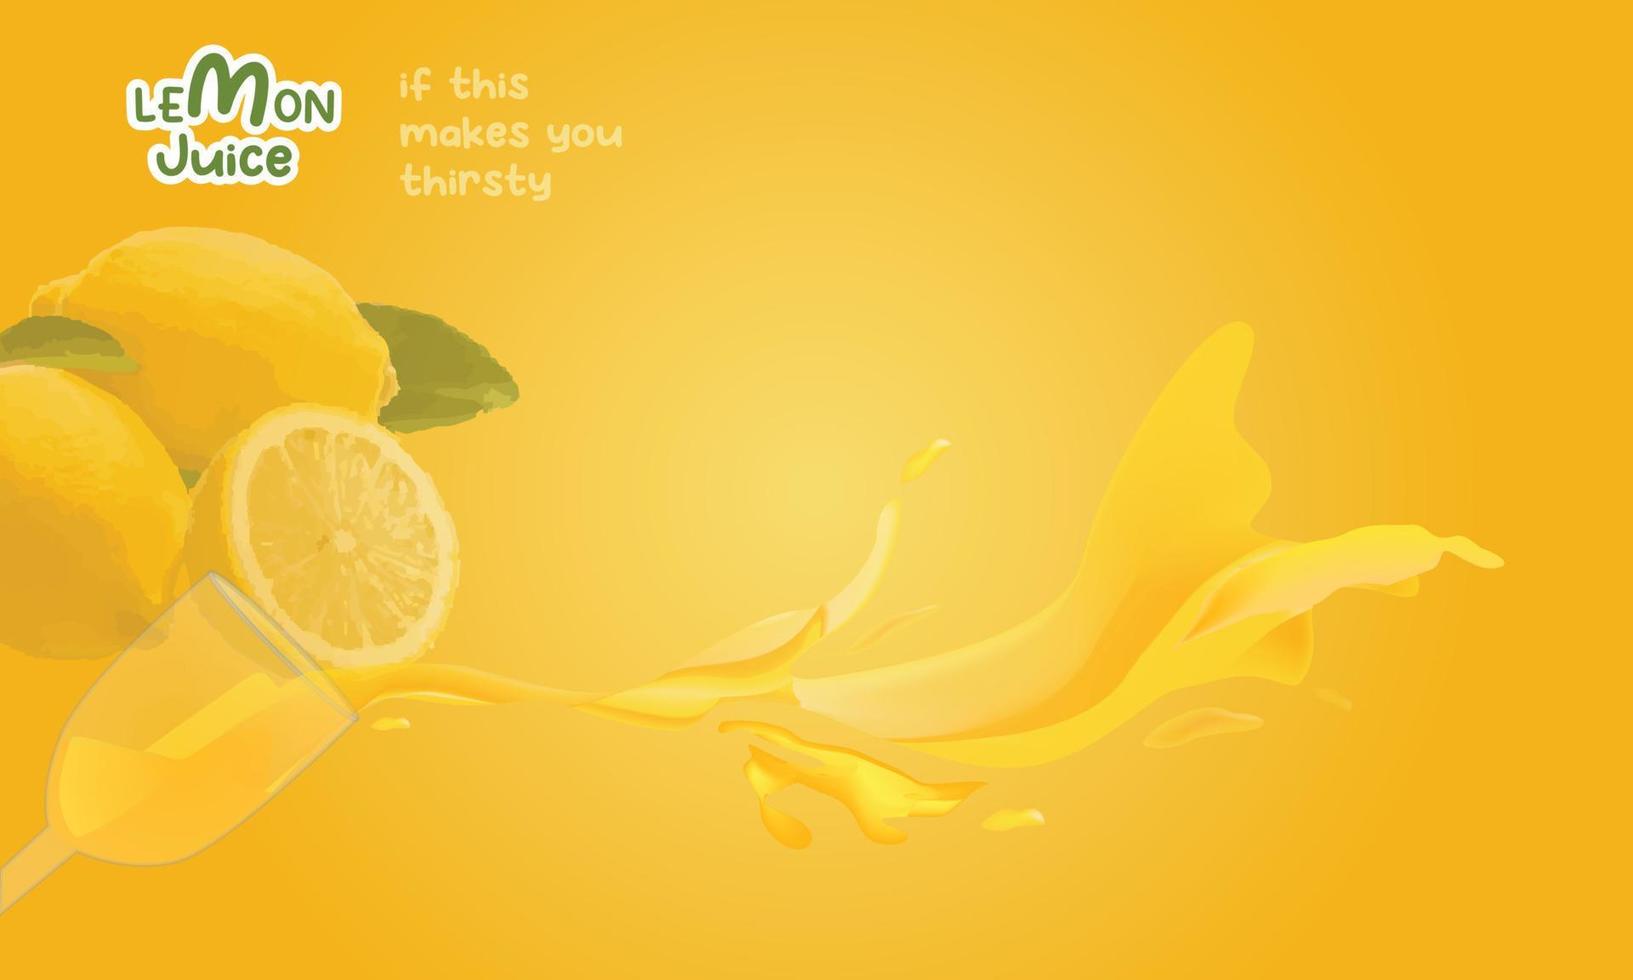 citroensap vector achtergrond, voedsel banner geel, zoet geel fruit.